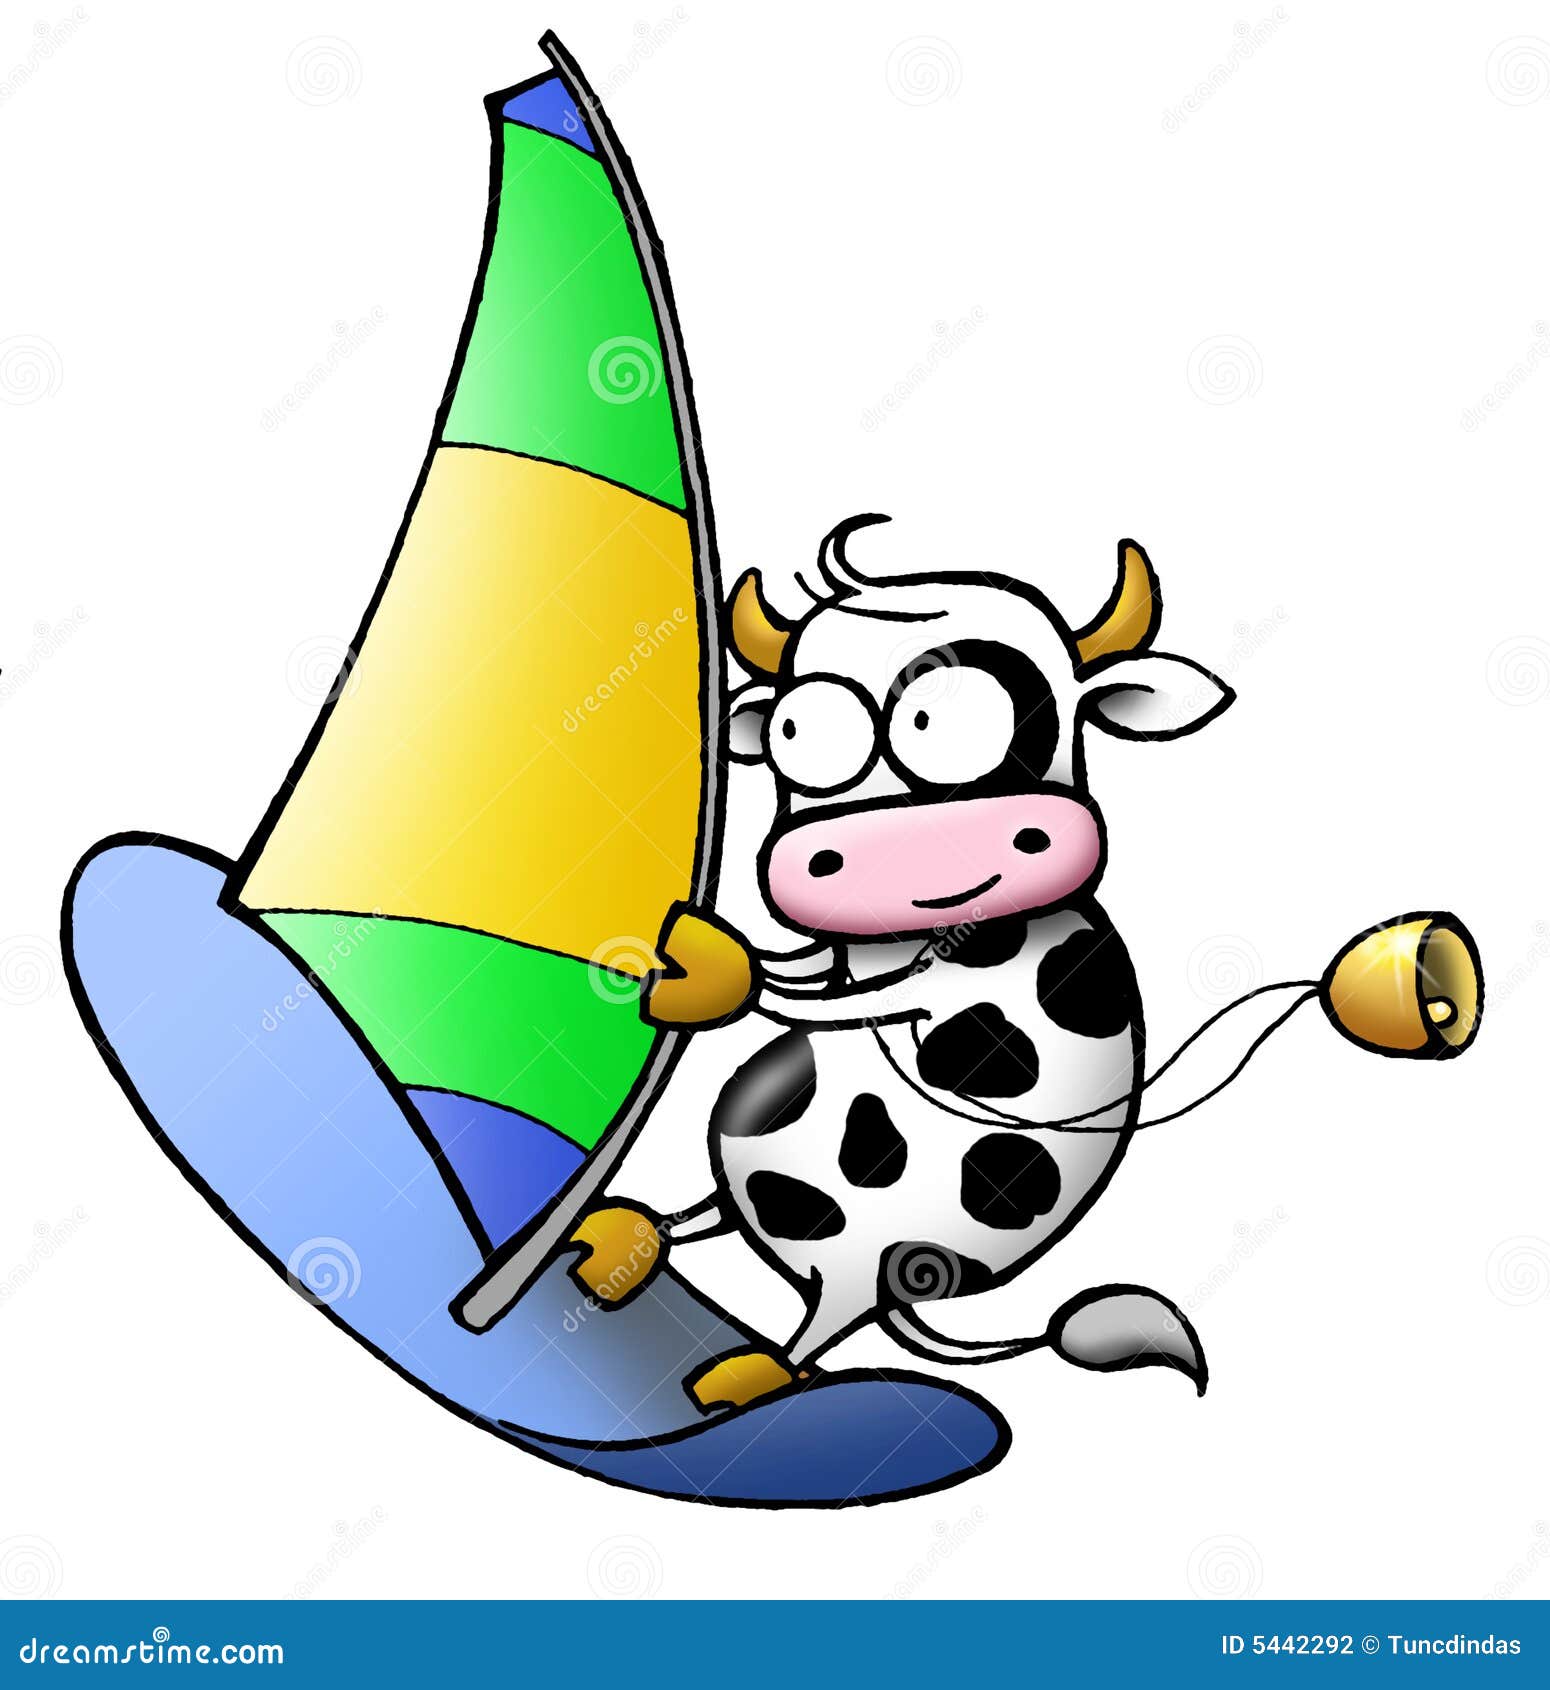 cow series - windsurf